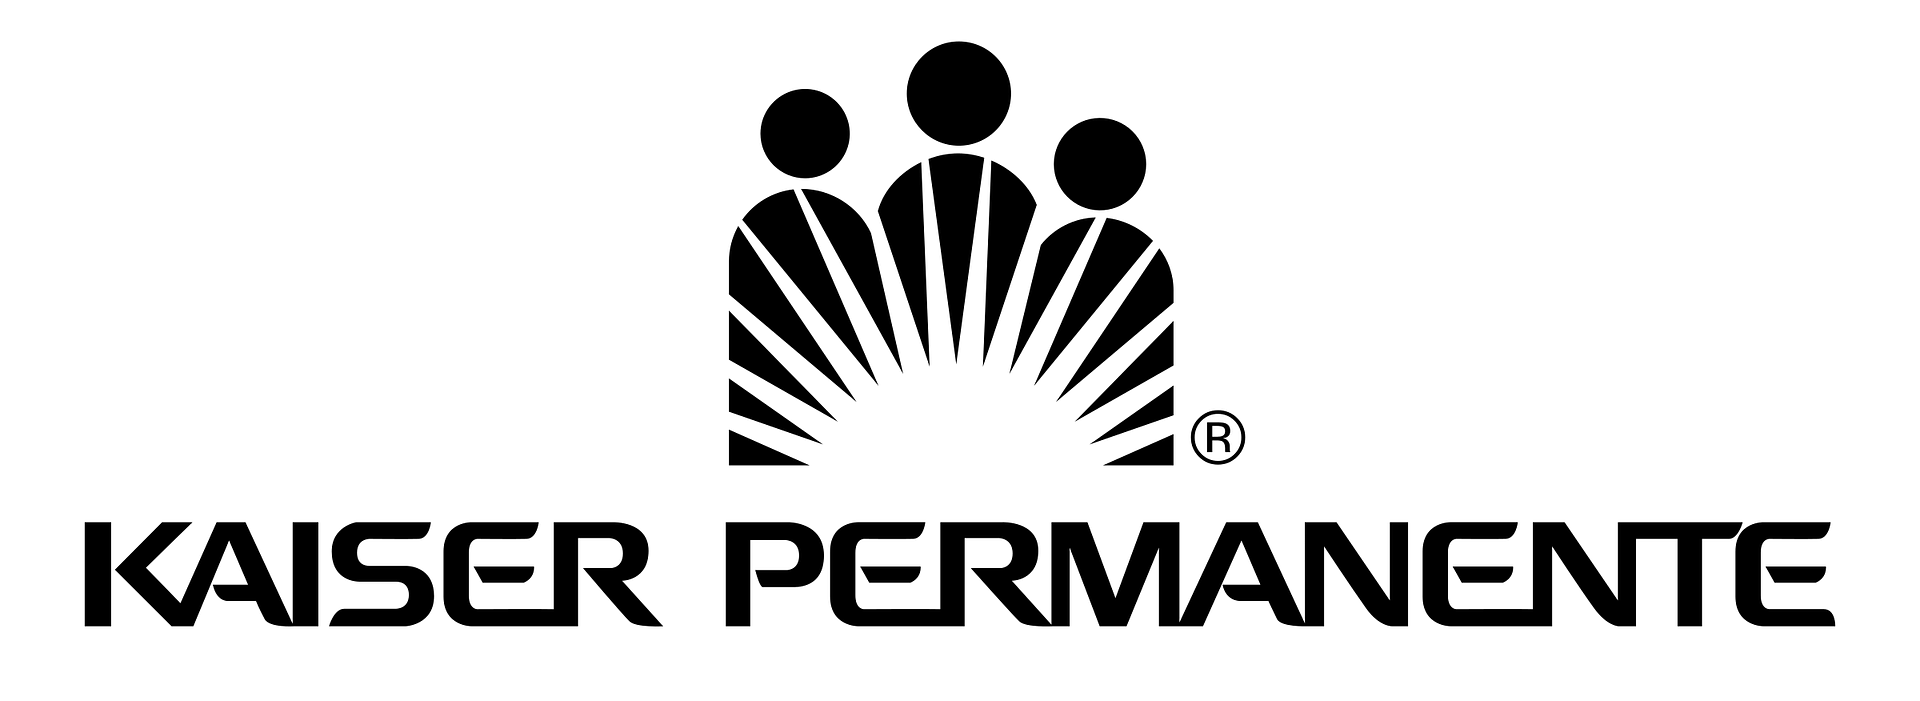 kaiser permanente 3 logo png transparent